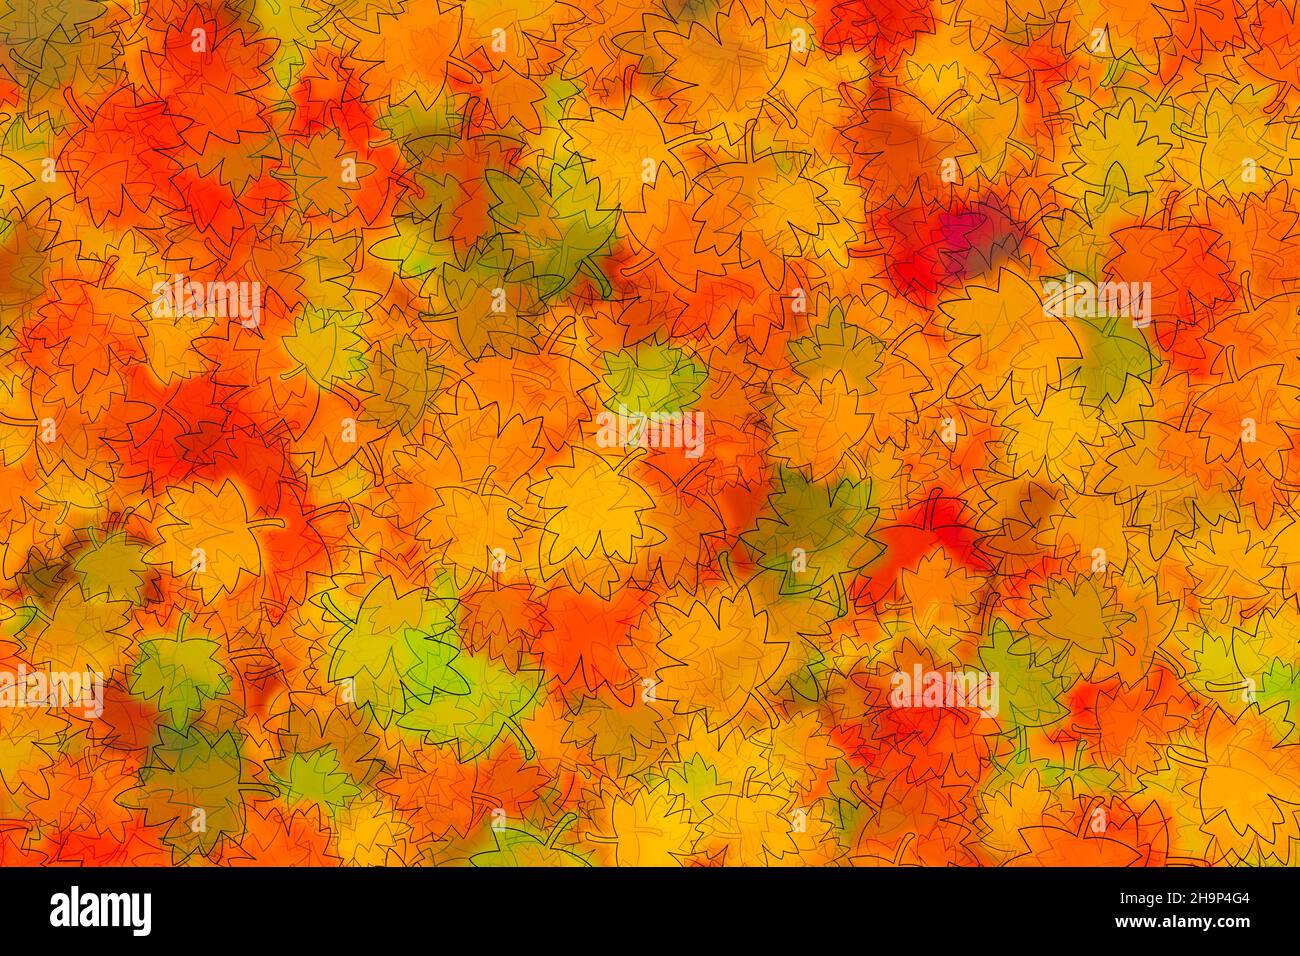 Illustrazione astratta di strati di foglie di acero di dimensioni diverse in arancione e verde. Concetto autunnale. Foto Stock